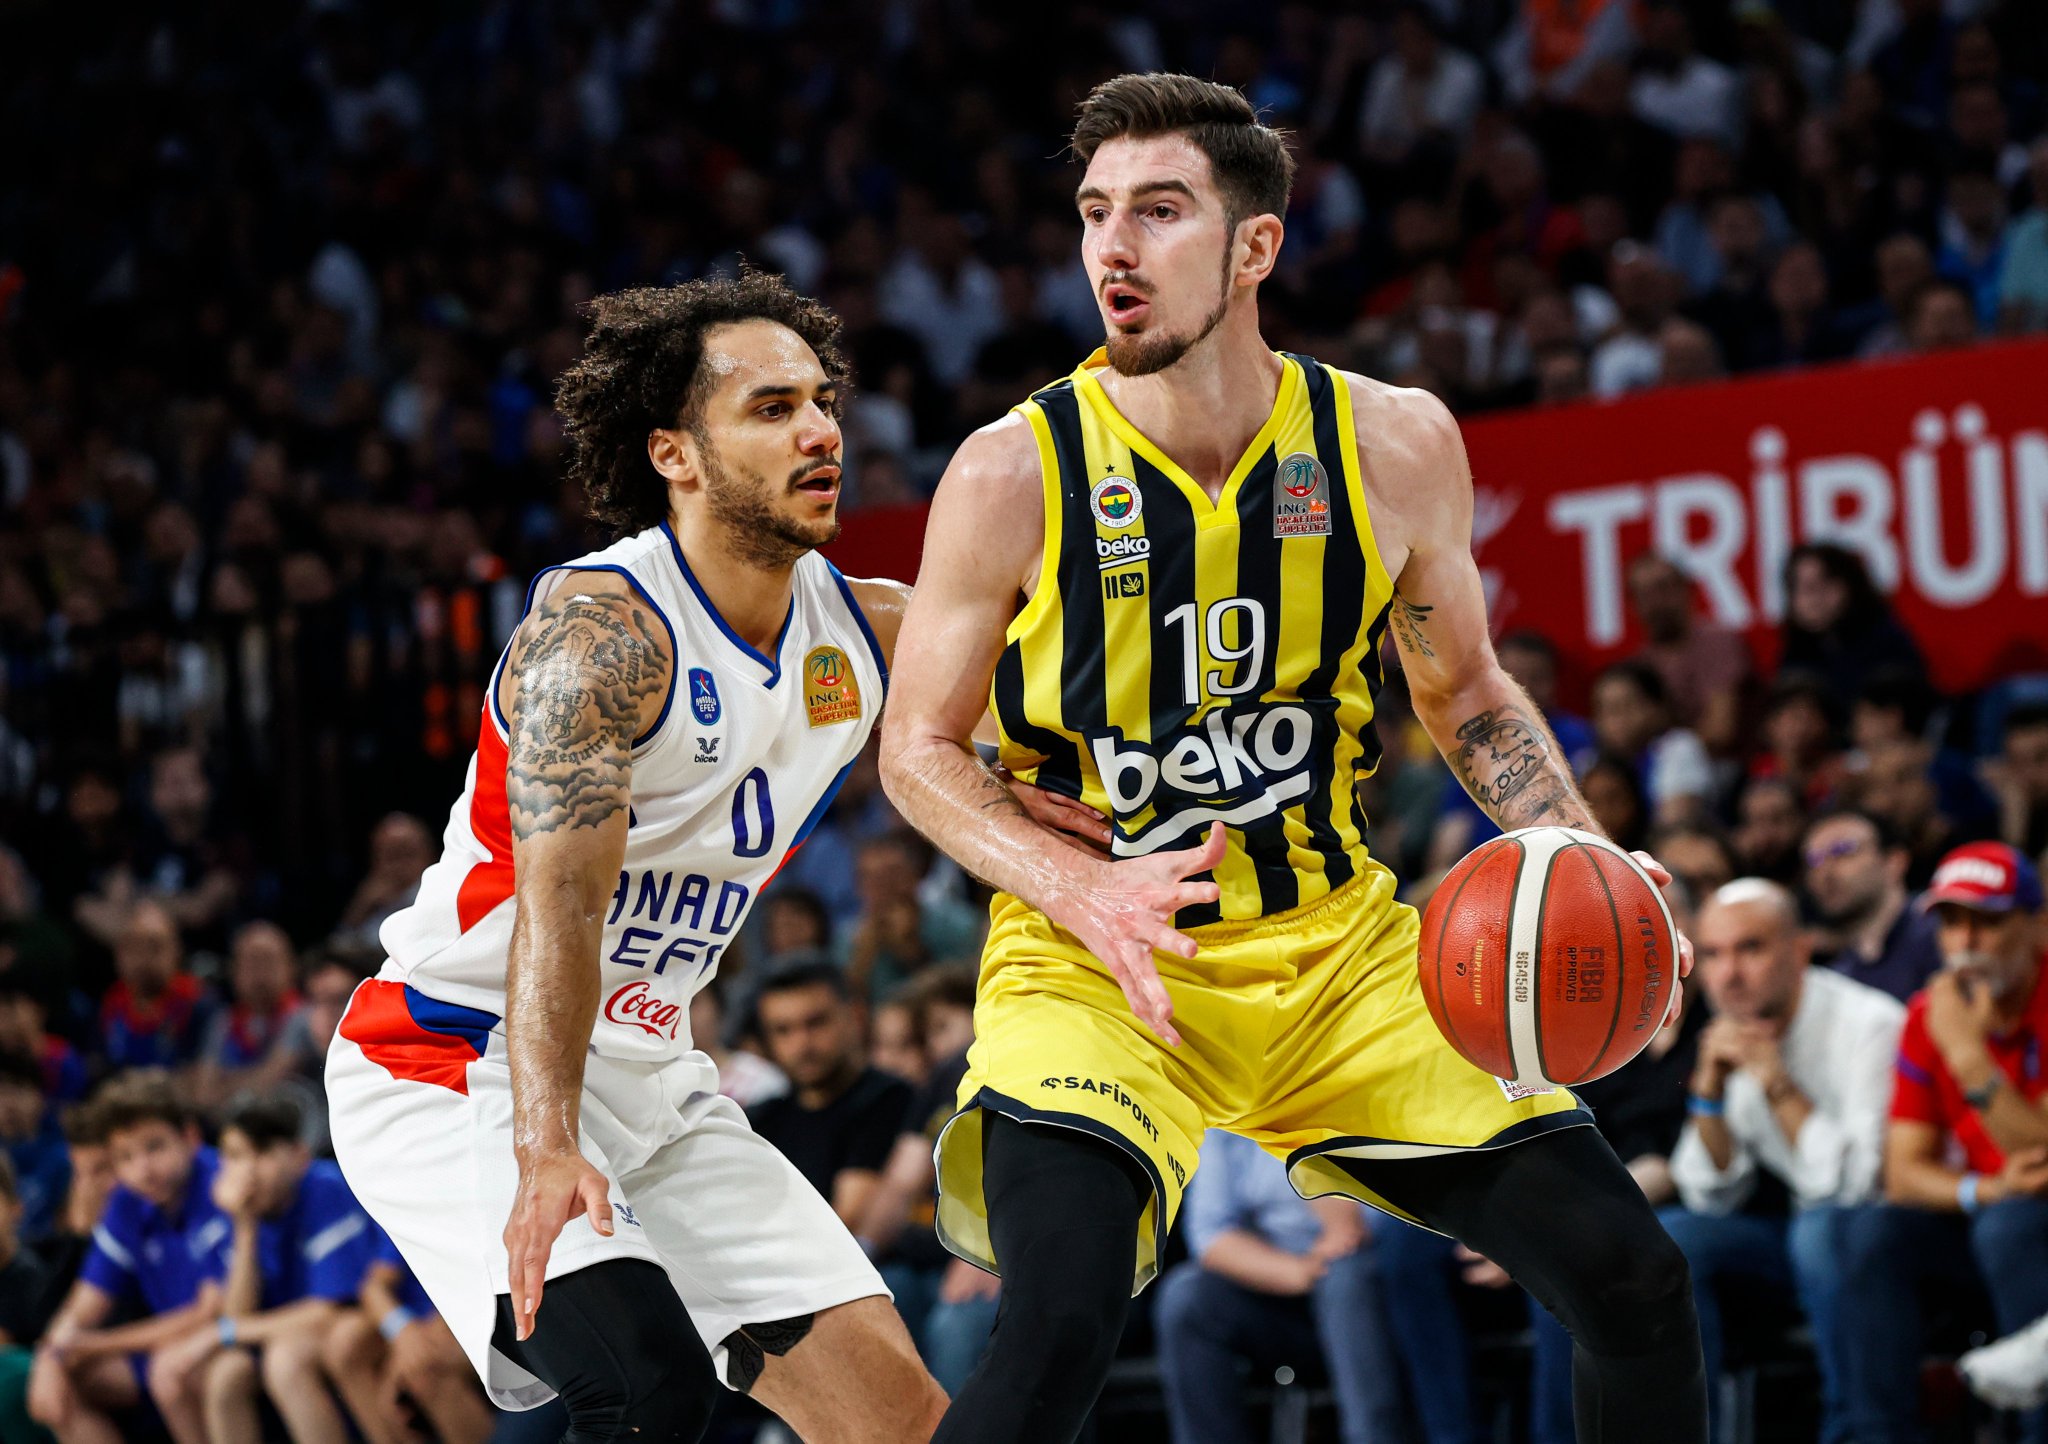 ING Basketbol Süper Ligi’nde sezonun şampiyonu Fenerbahçe oldu.